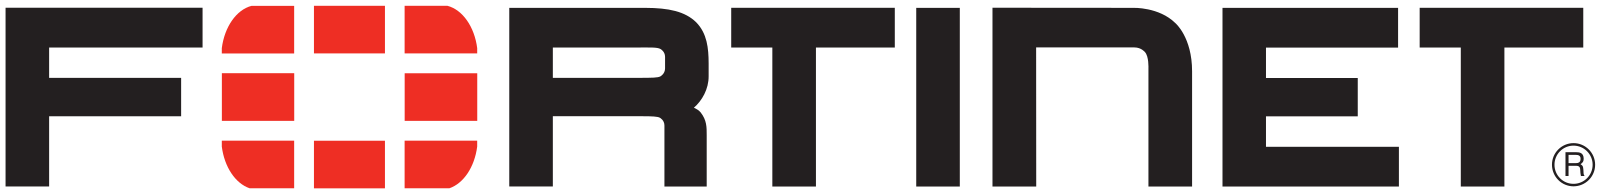 Fortinet Logo.svg 2